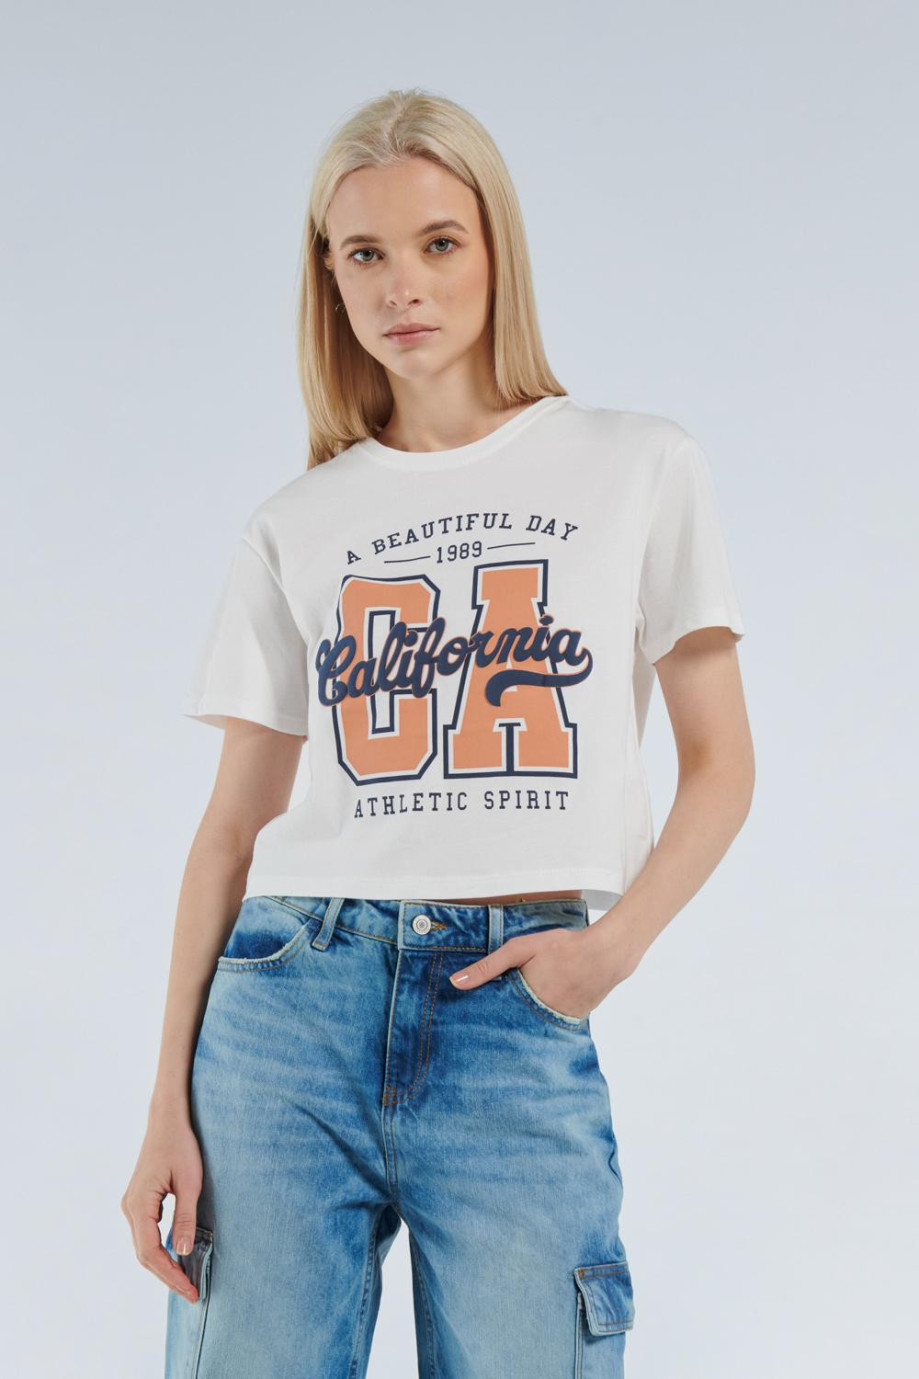 Camiseta crema clara crop top con manga corta y diseño college